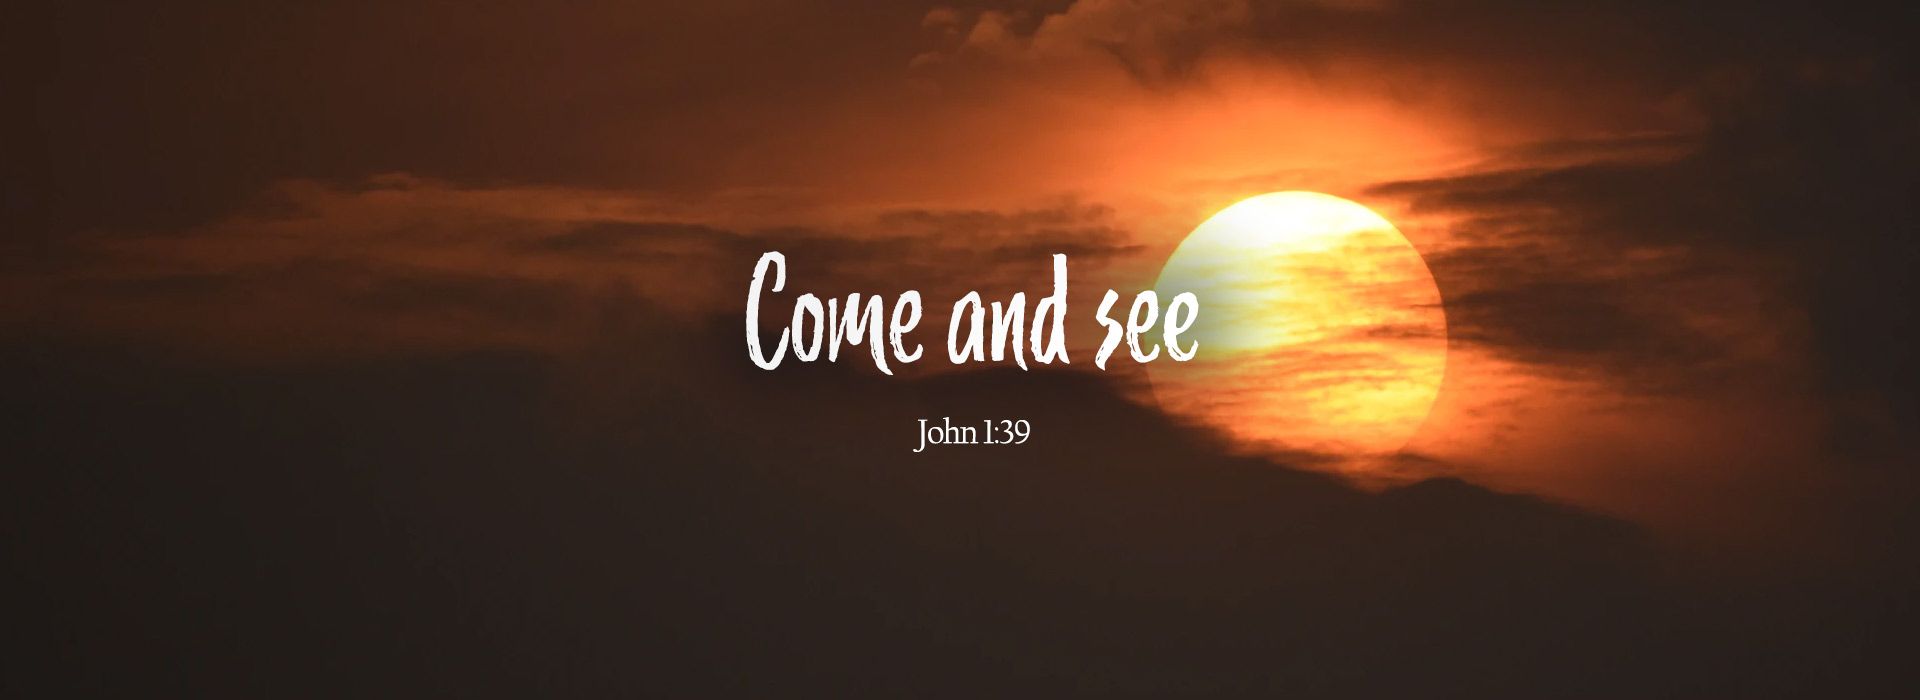 John 1:39